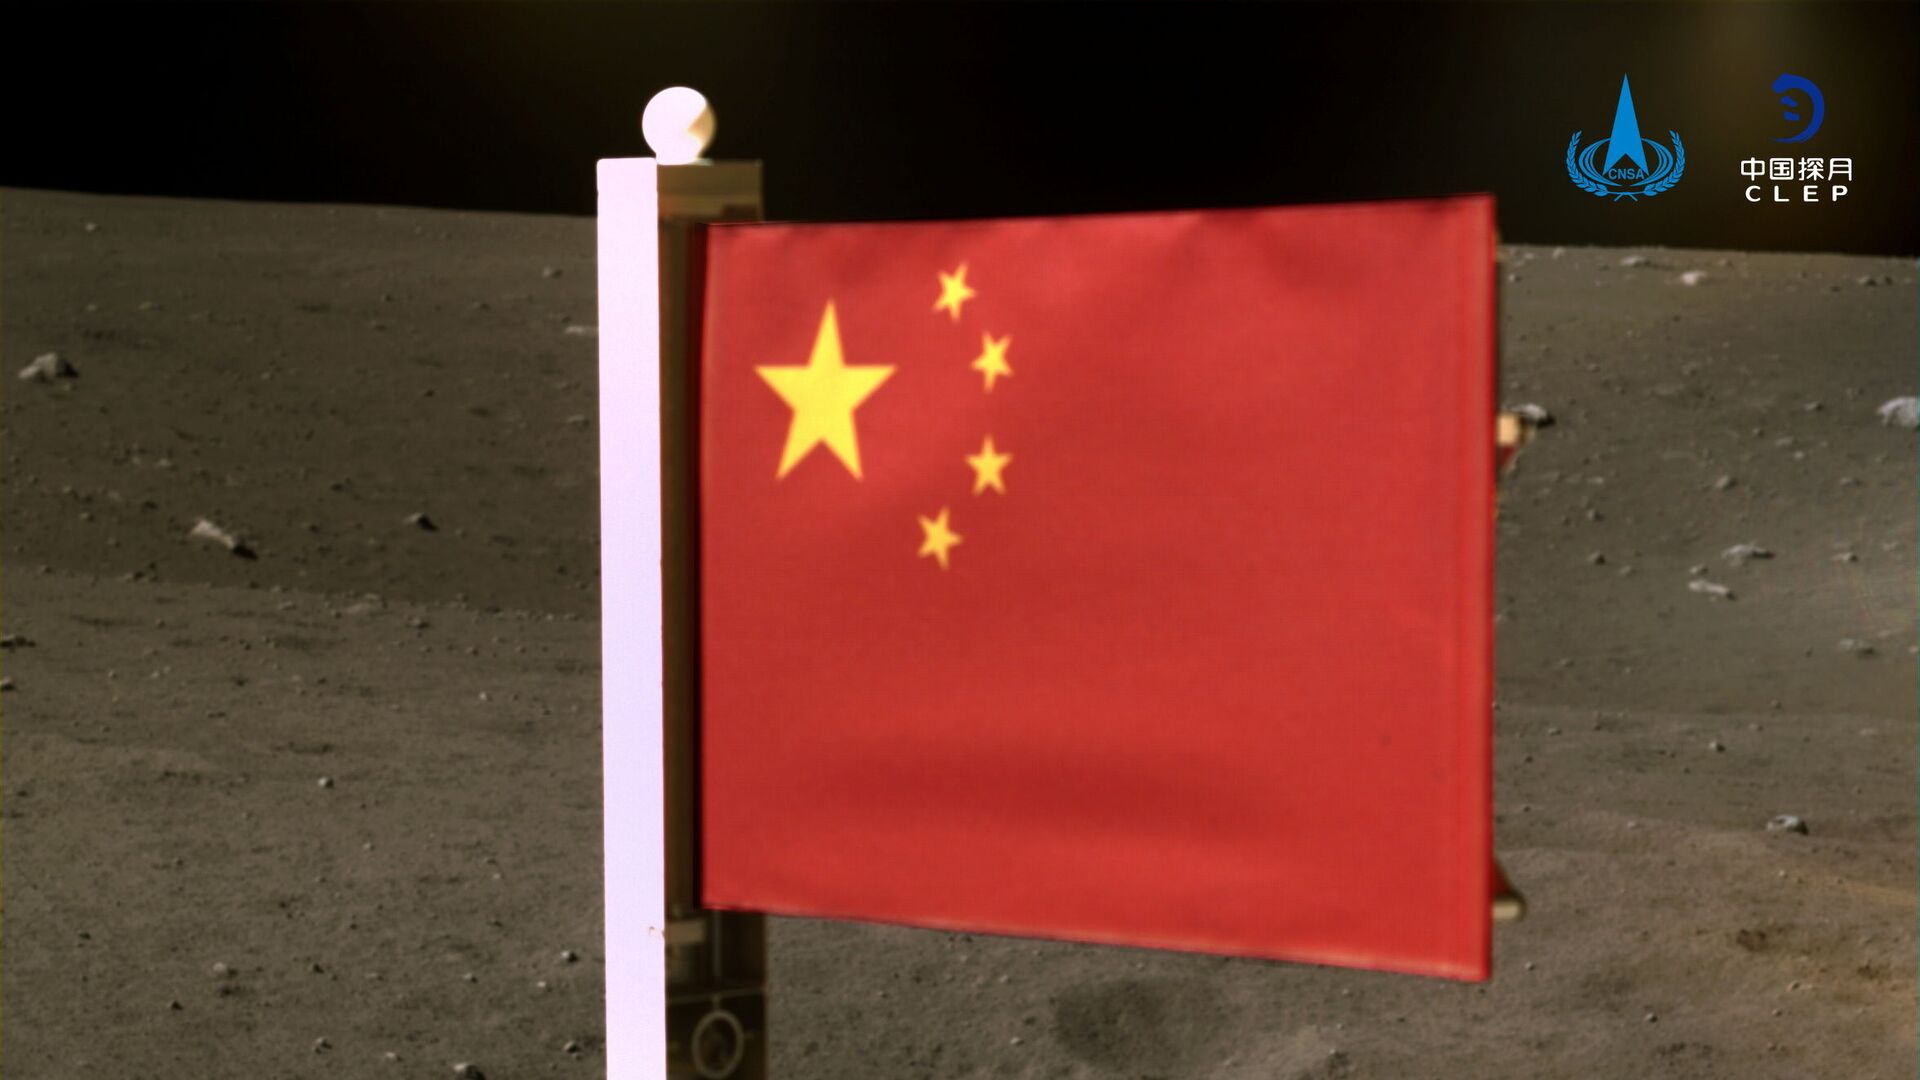  علم الصين الذي أوصله مسبار فضائي تشانغ آه-5 لجمع عينات من القمر وإعادتها، الصين 4 ديسمبر 2020 - سبوتنيك عربي, 1920, 07.06.2021